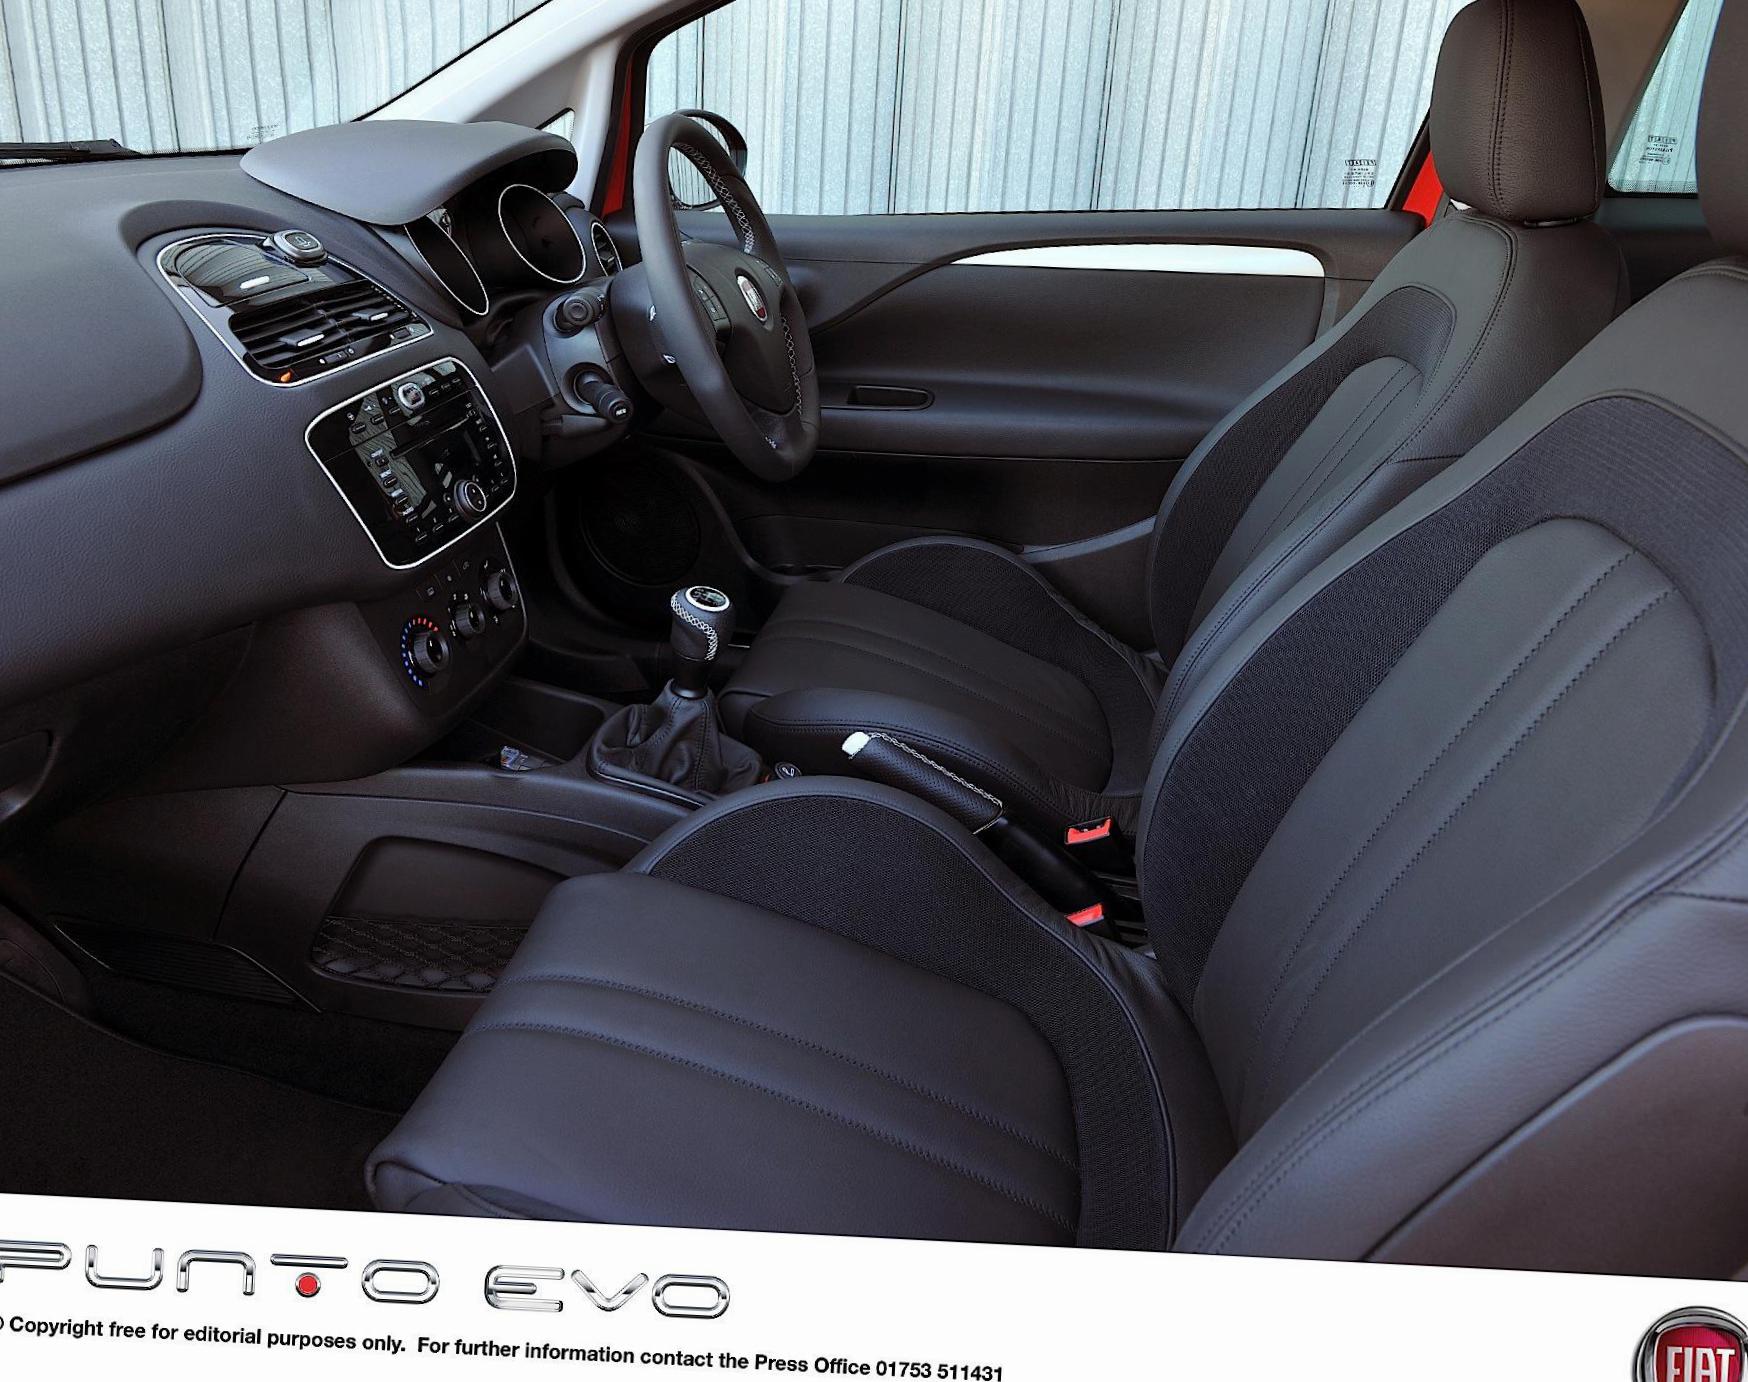 Punto Evo 5 doors Fiat tuning 2010